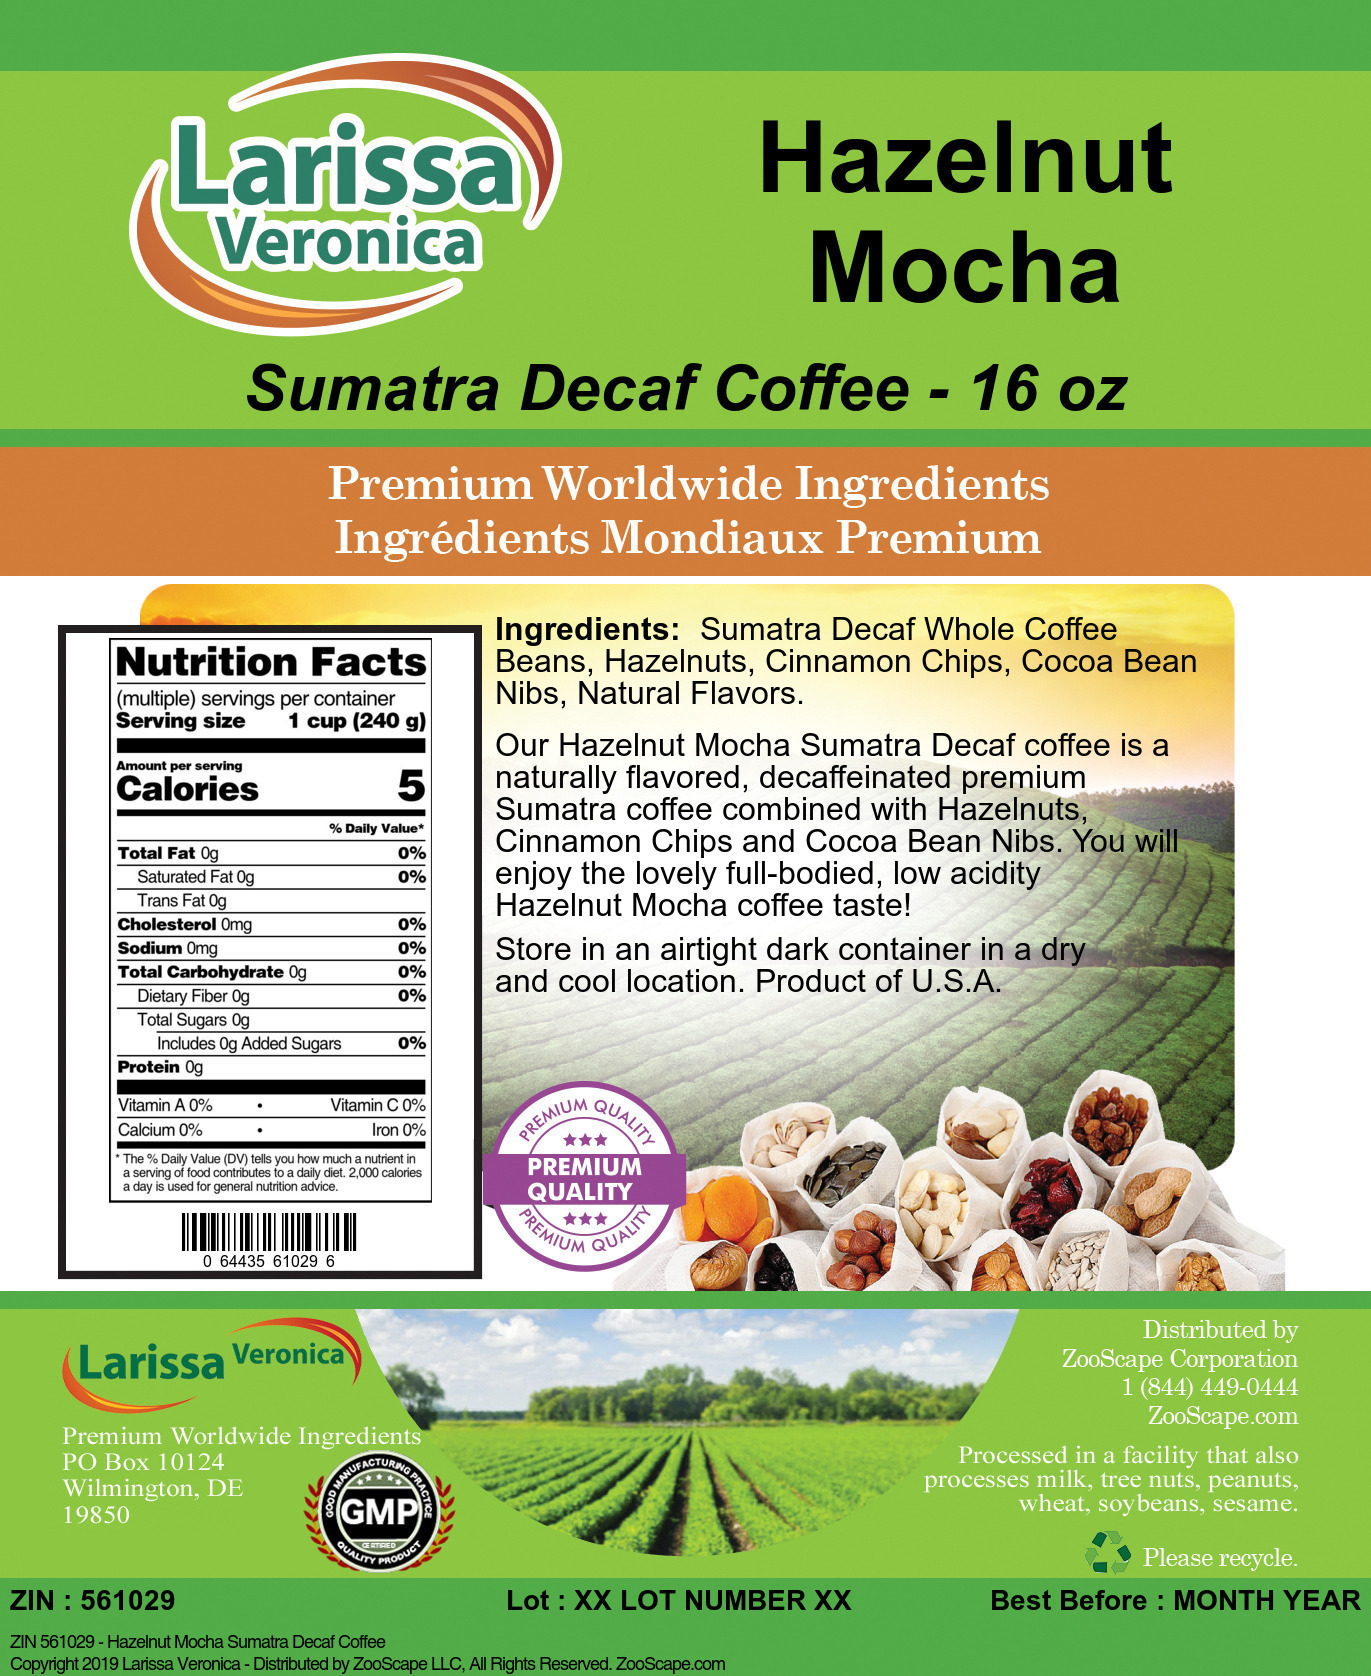 Hazelnut Mocha Sumatra Decaf Coffee - Label